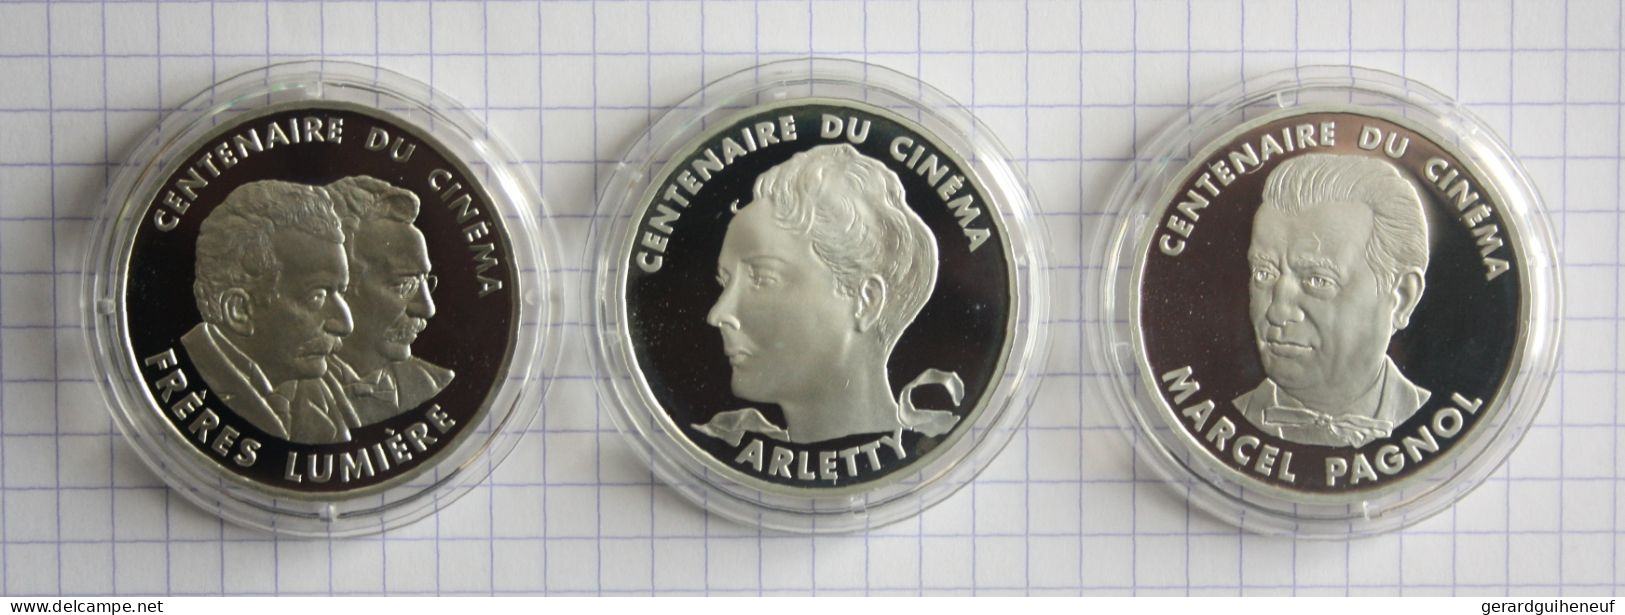 FRANCE : 3 Monnaies 100 Francs ARGENT En Qualité FDC - Cotation : 97 Euros - Alla Rinfusa - Monete